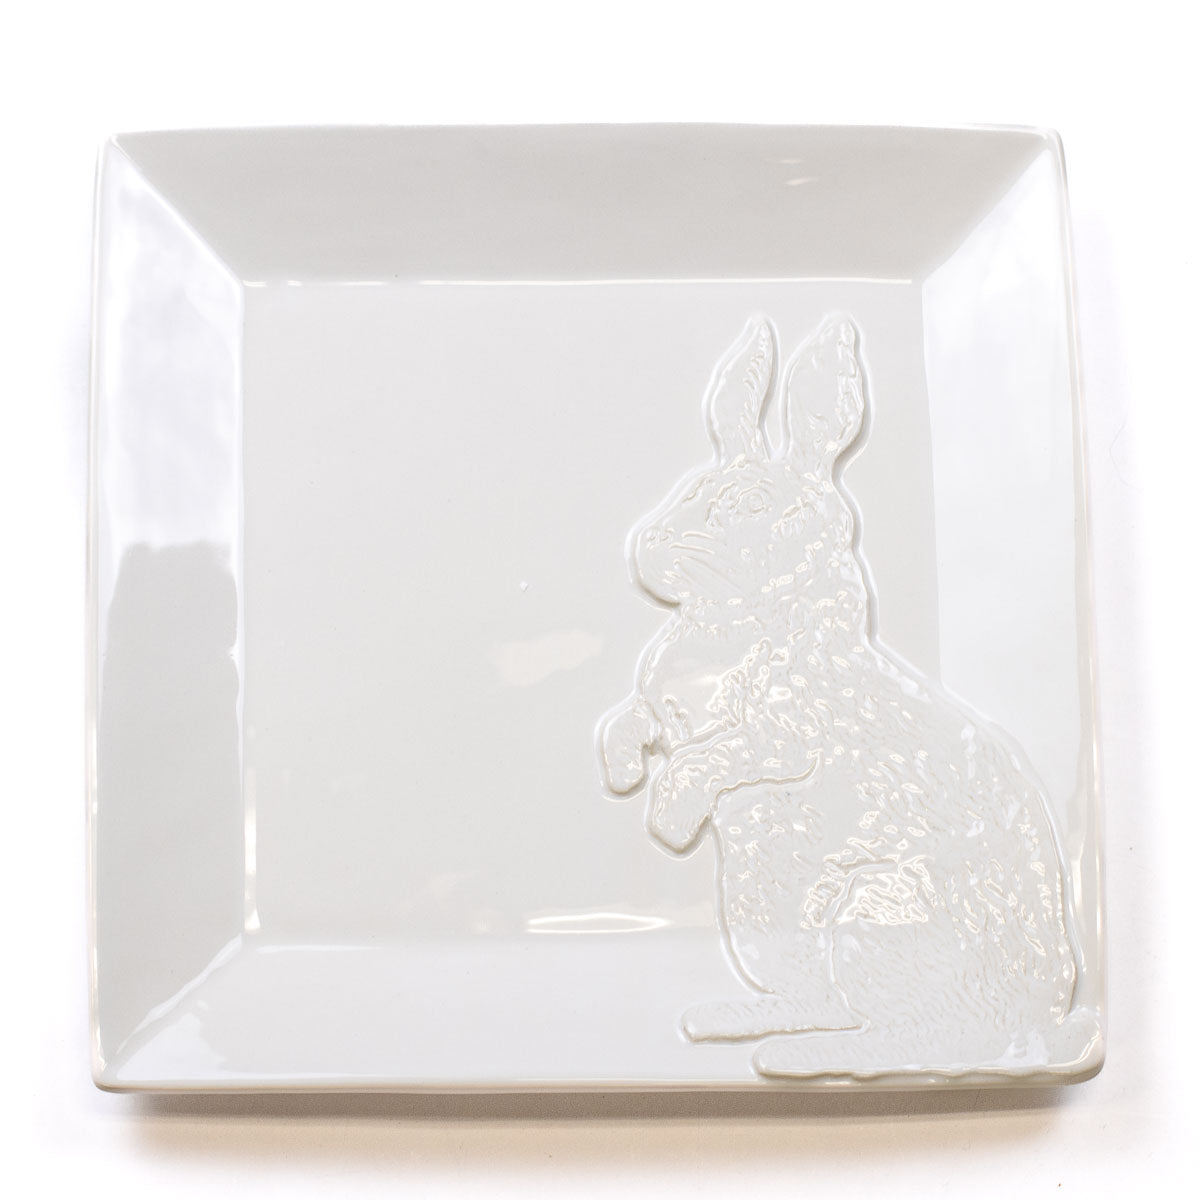 June Bunny Embossed Platter